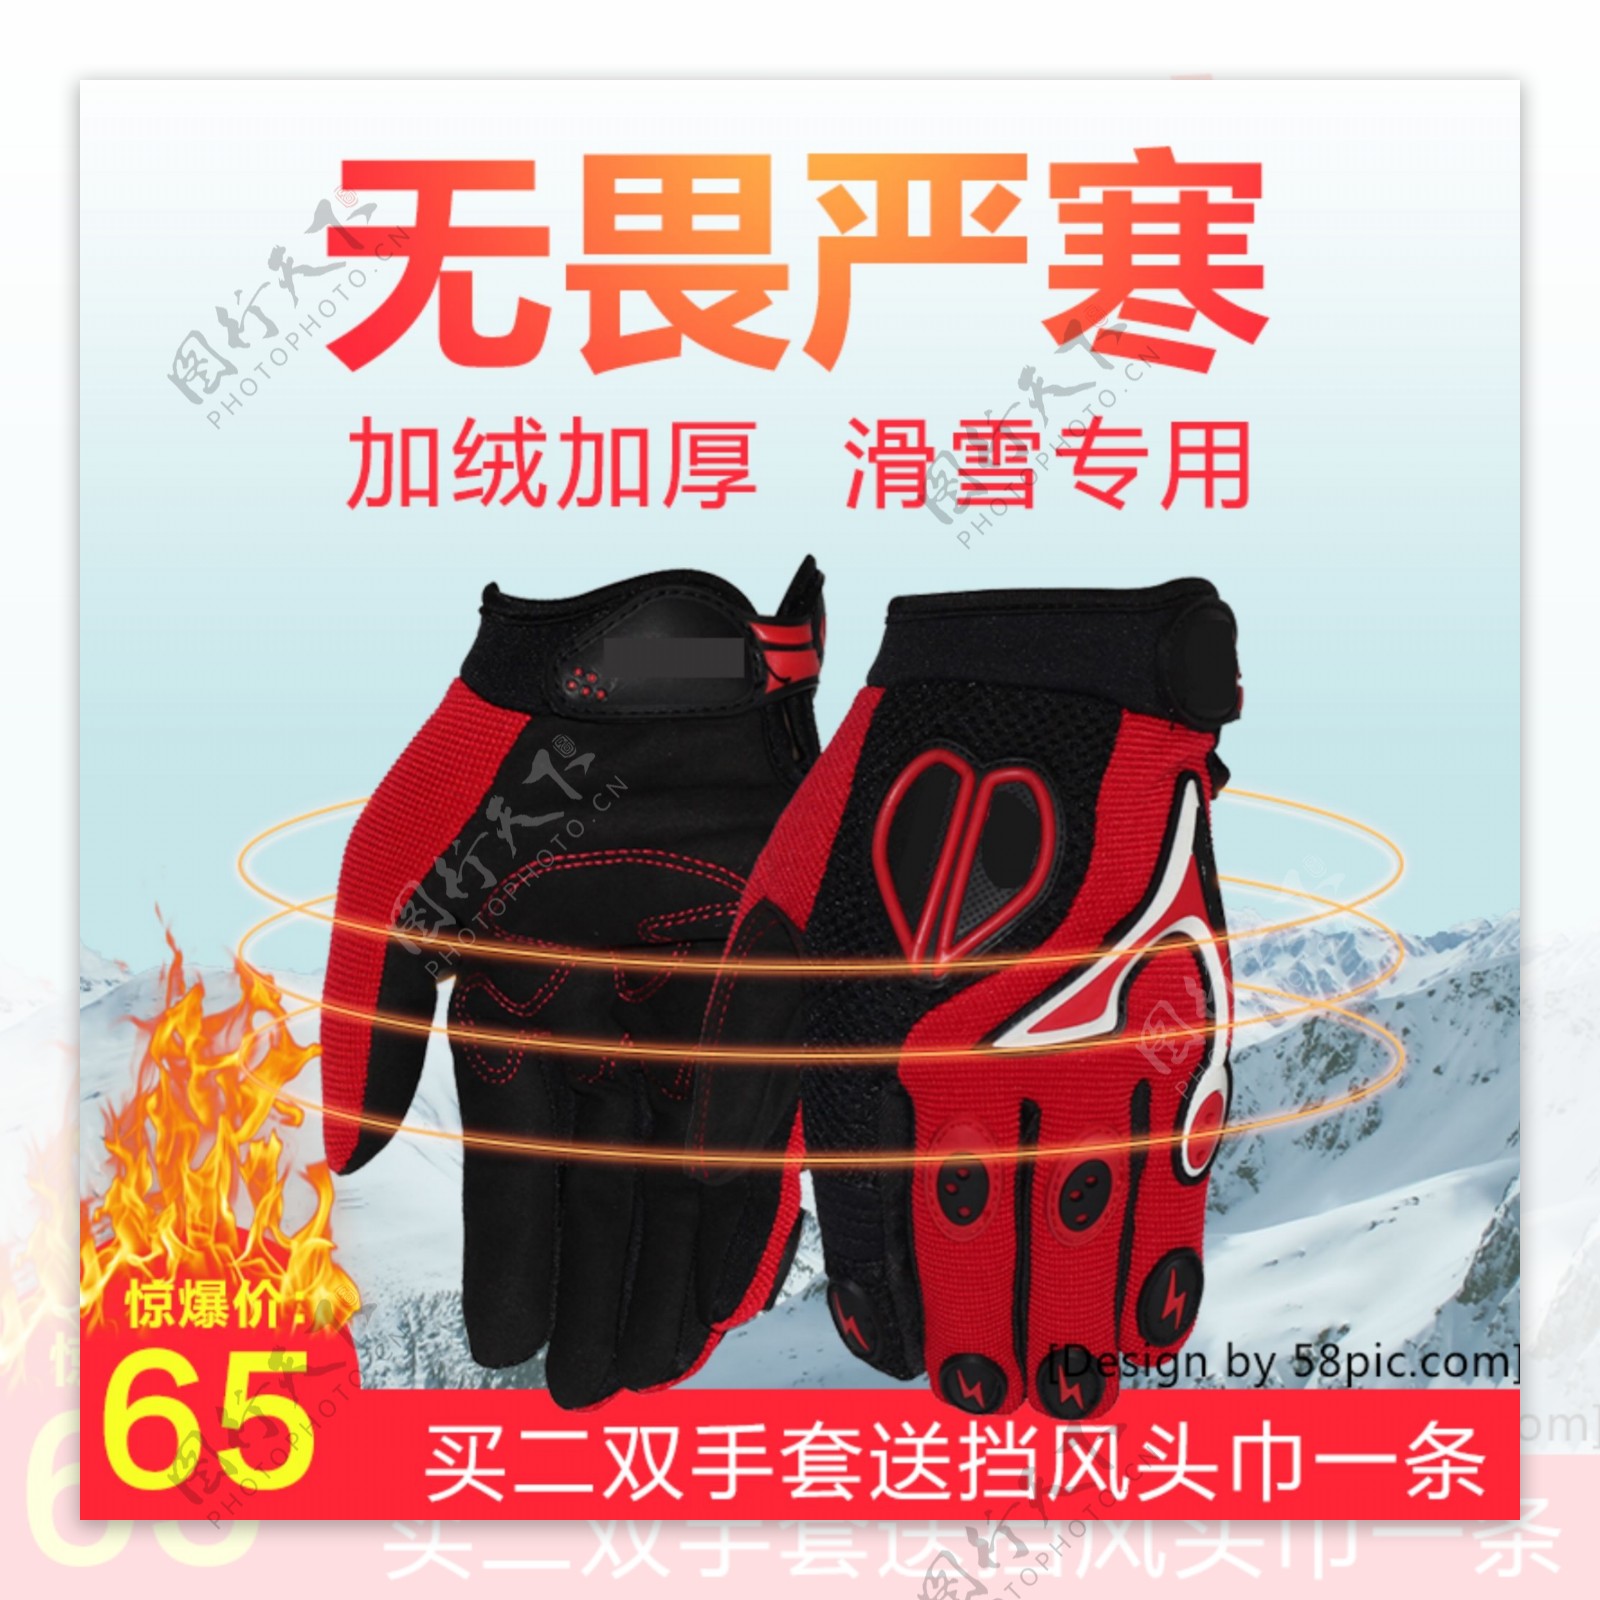 红色户外滑雪手套滑雪节电商主图